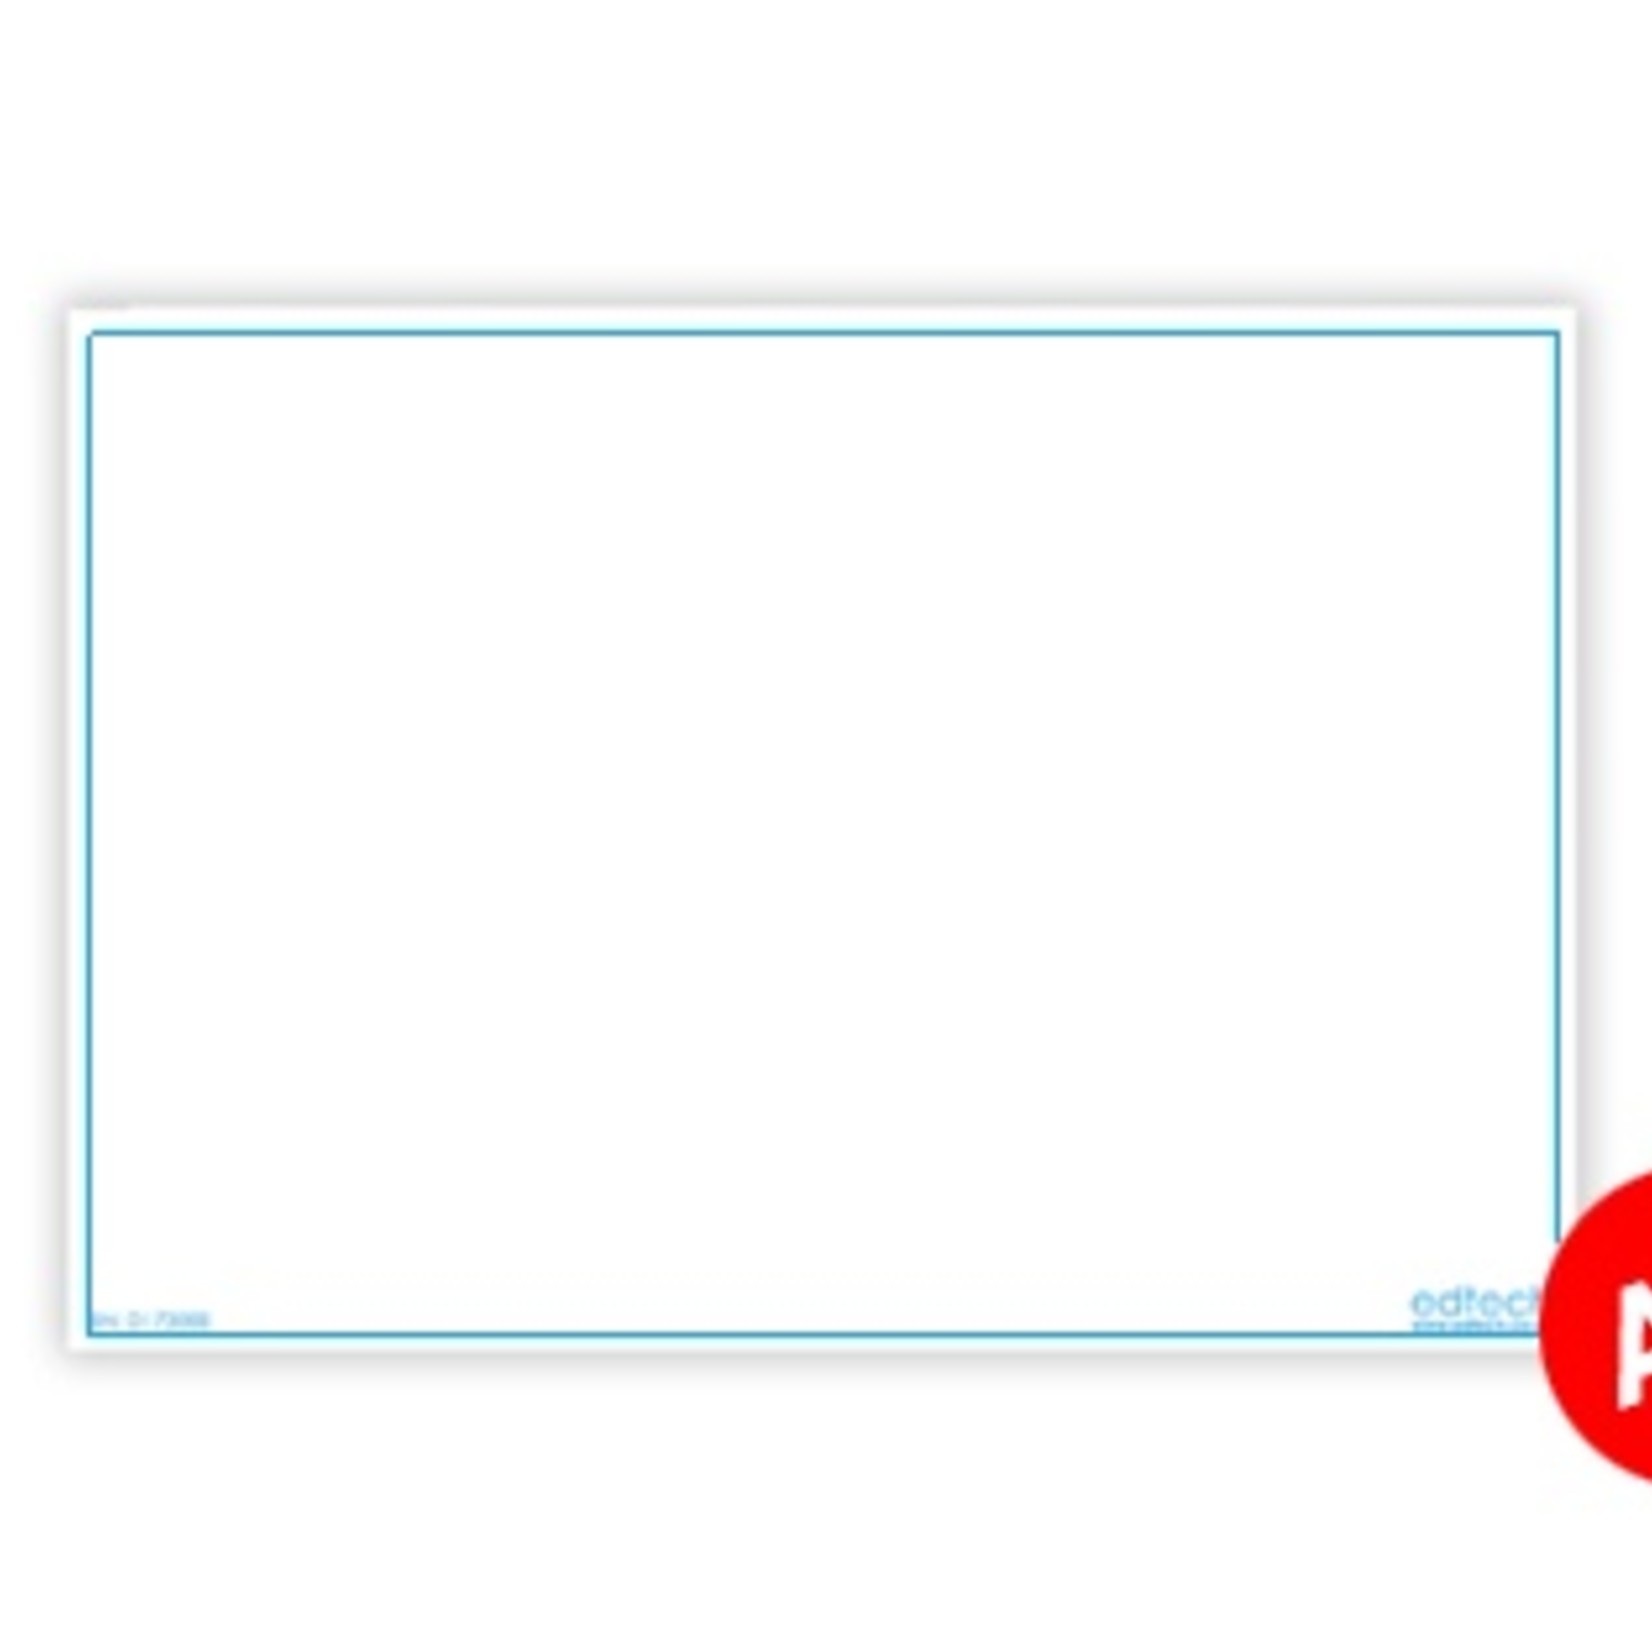 Verminderen vertegenwoordiger identificatie Whiteboard kaarten - Blanco A4 - LeestotaalShop